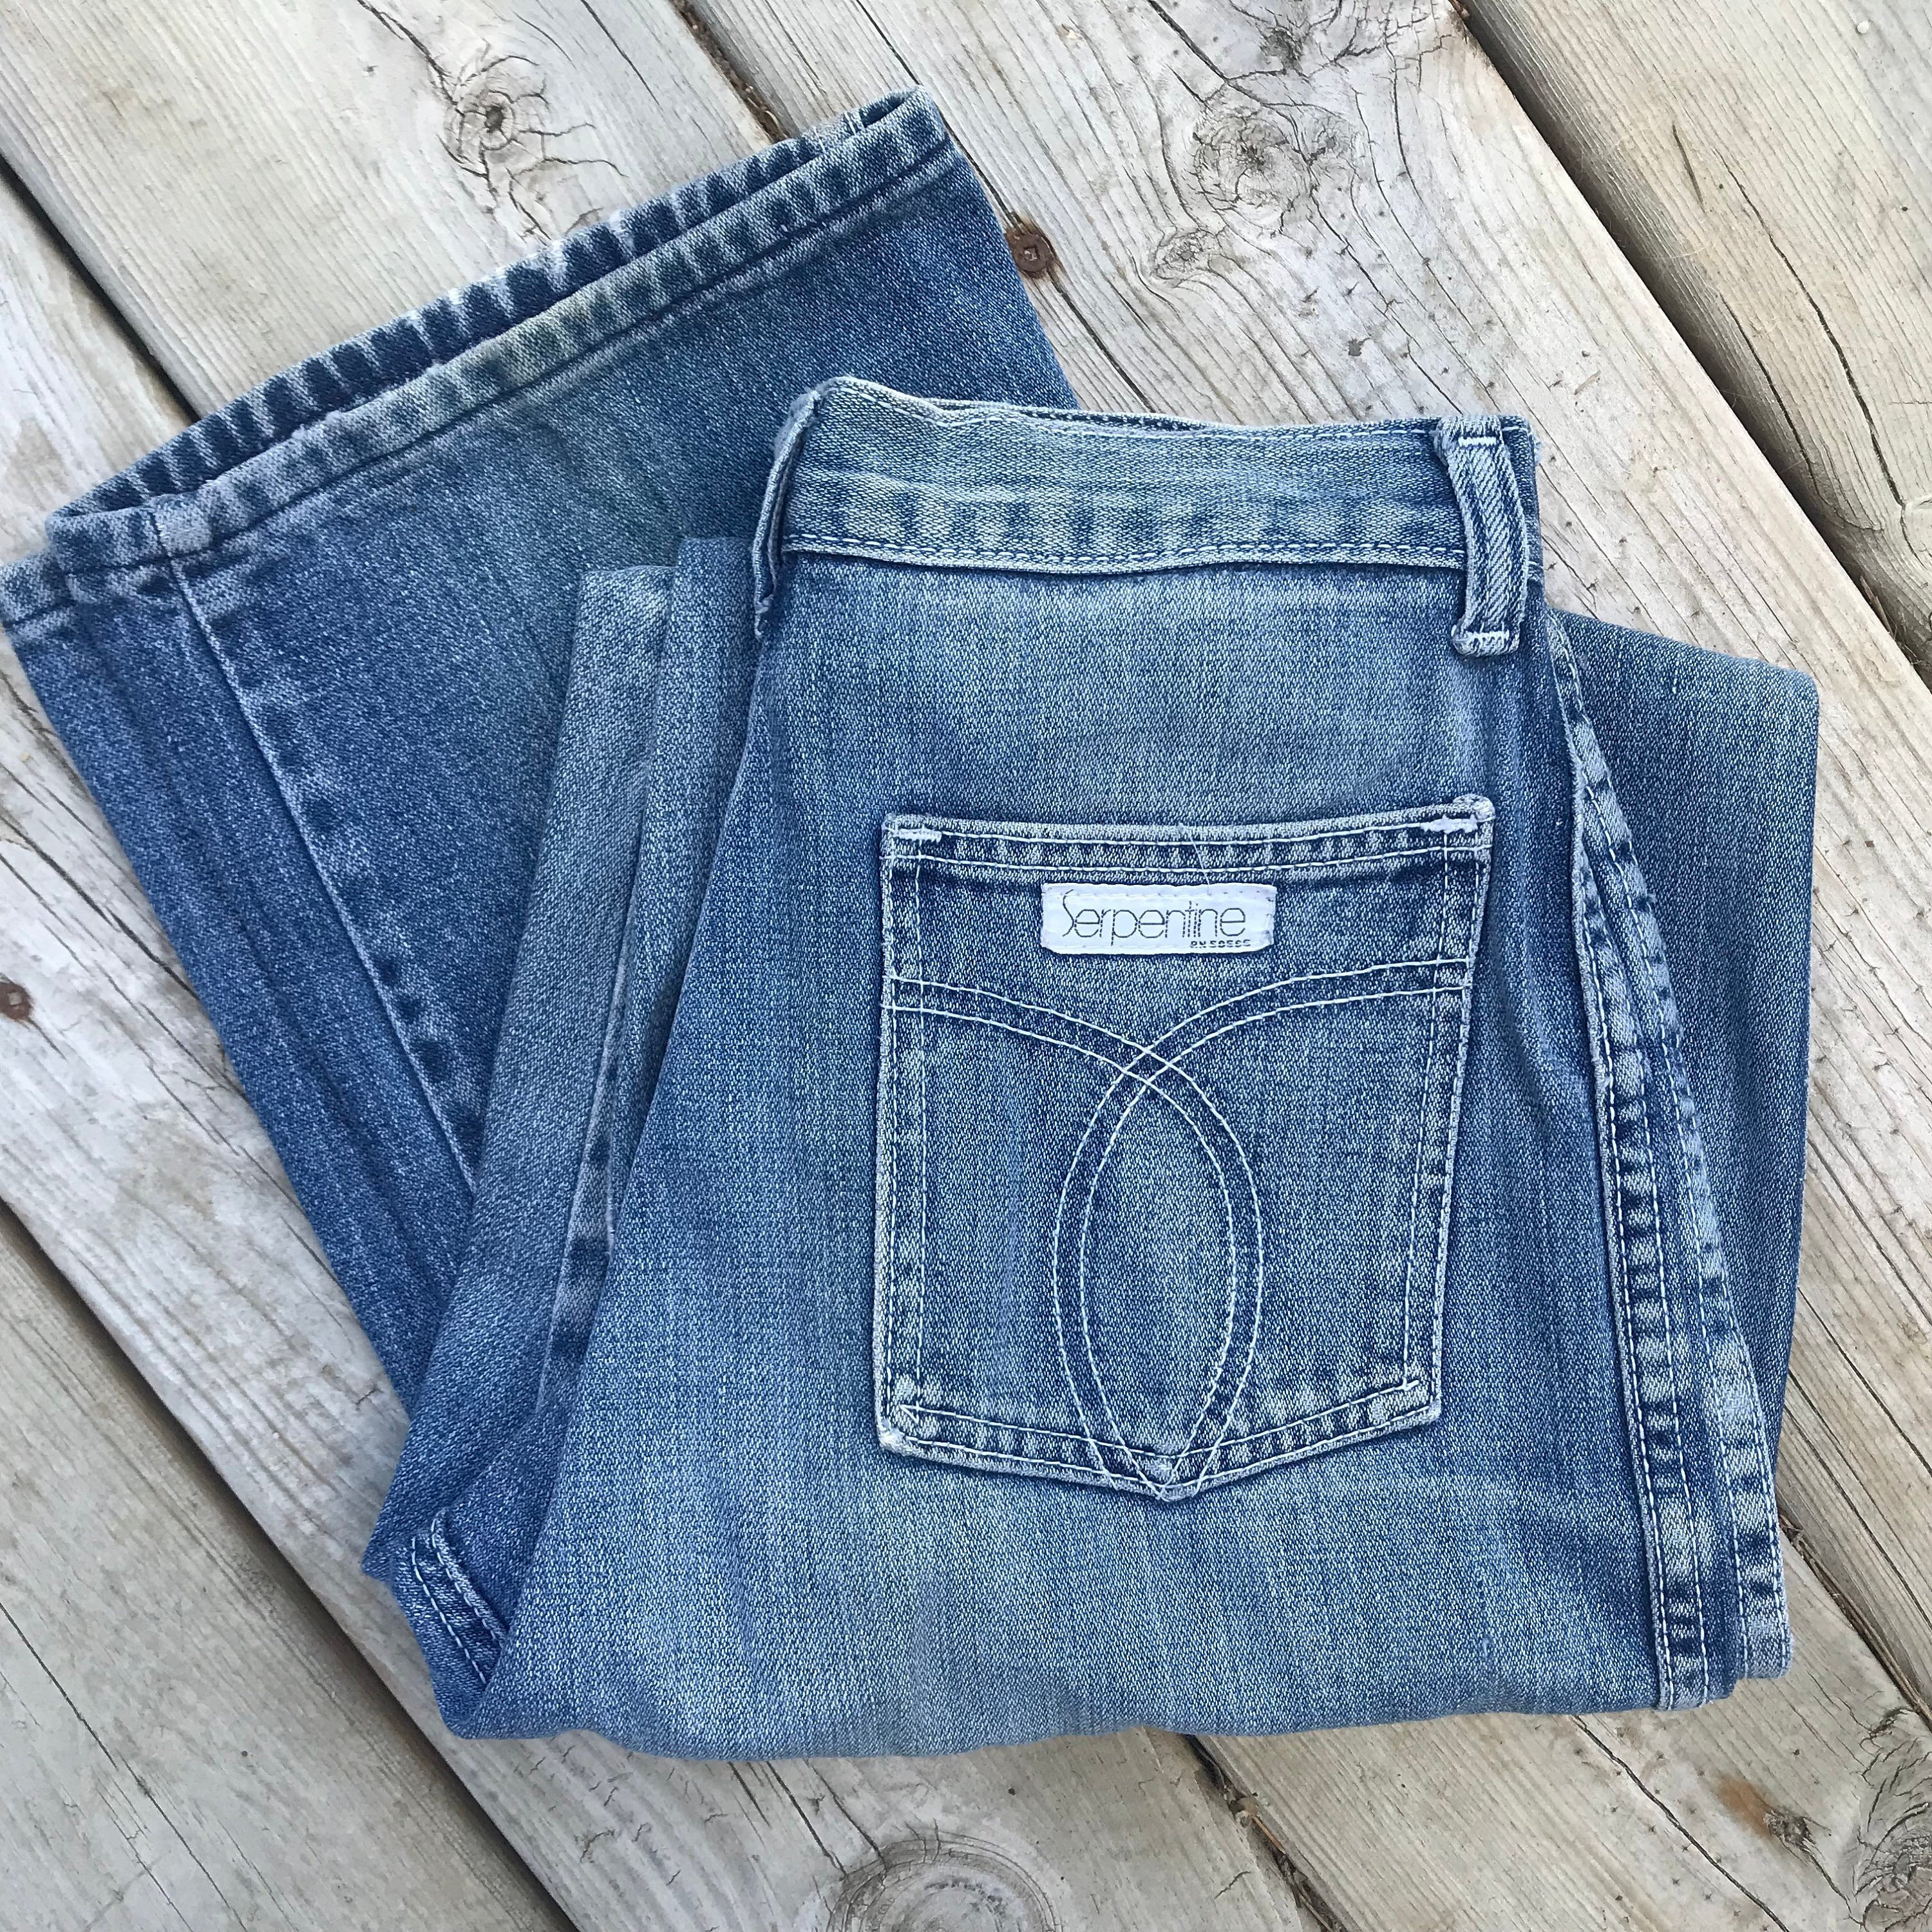 70's Serpentine Jeans High Waist Light Wash Straight - Etsy